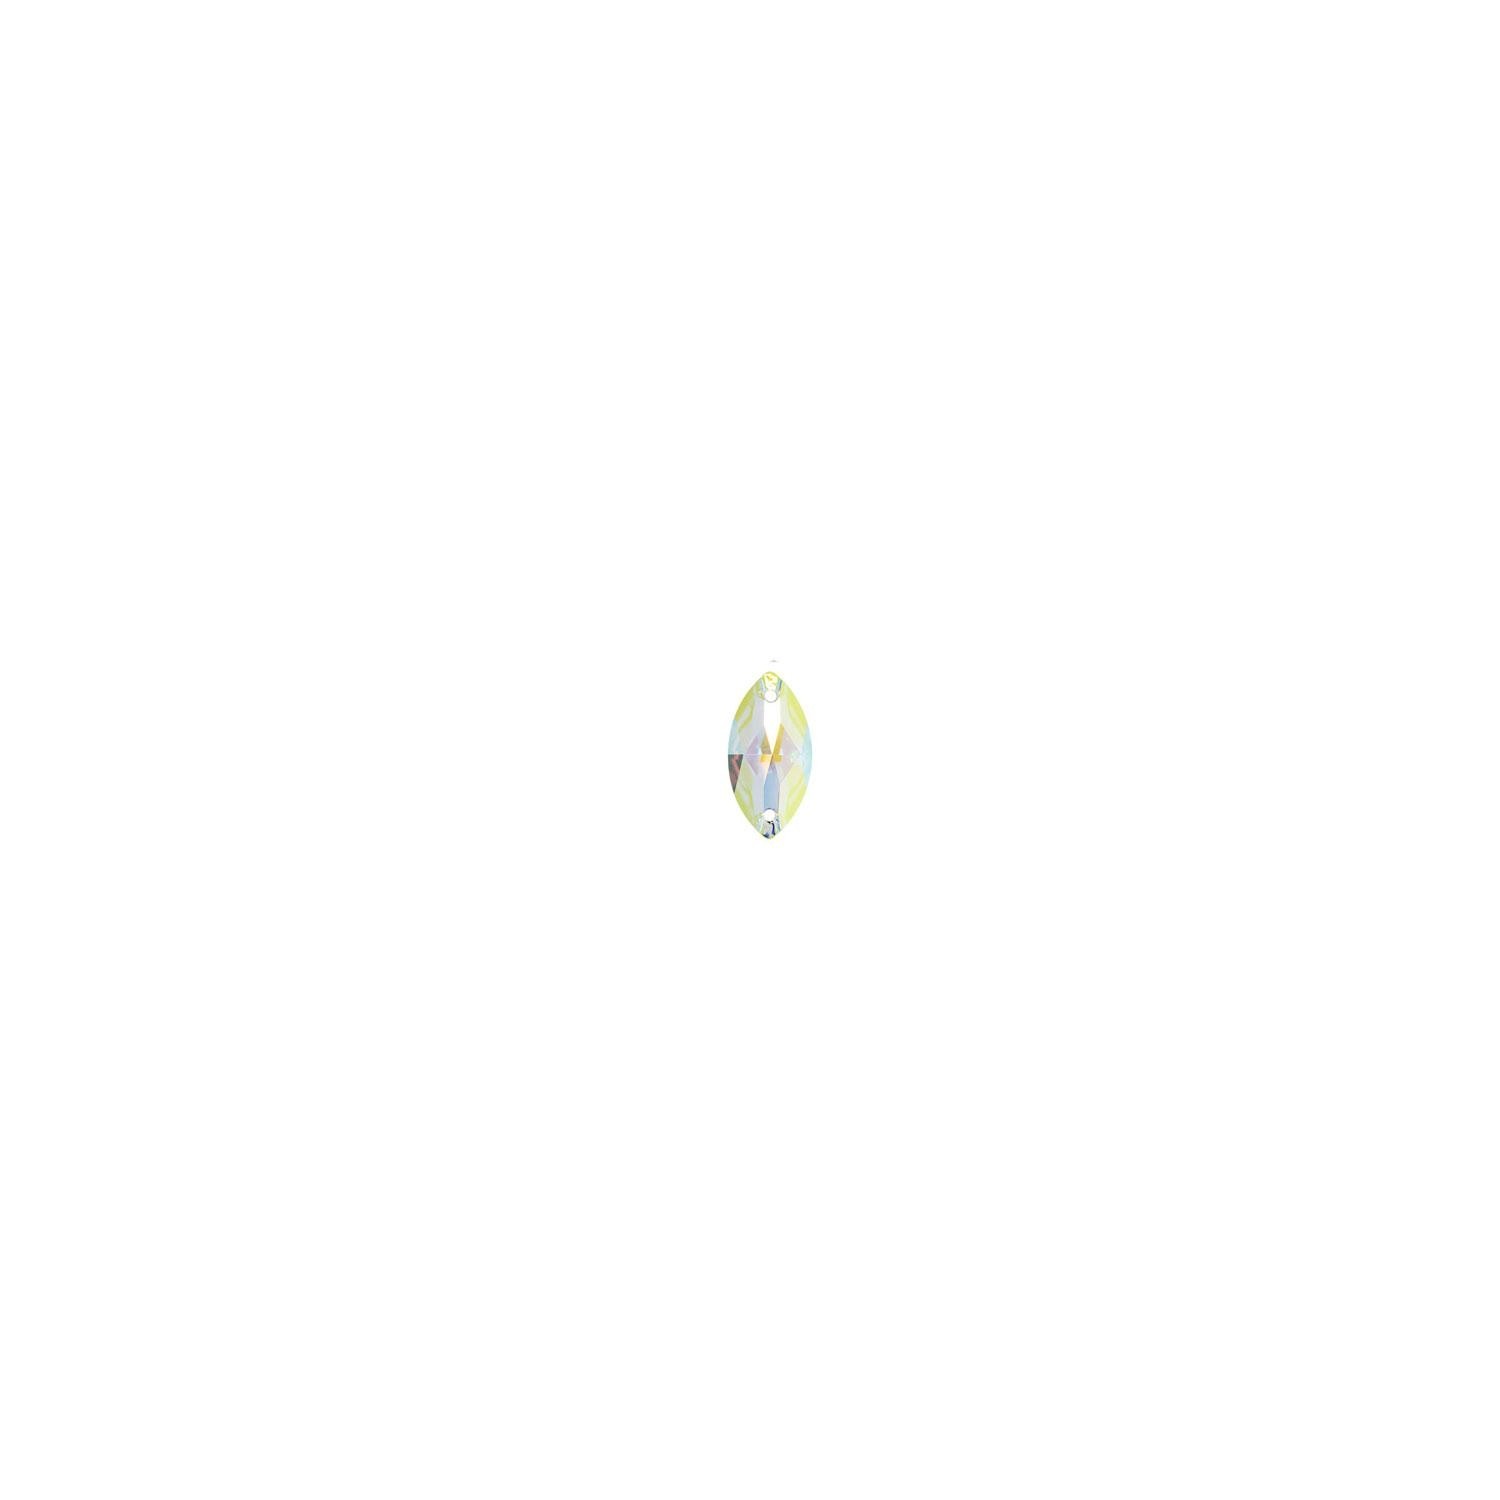 Swarovski de cusut migdala crystal ab 18mm